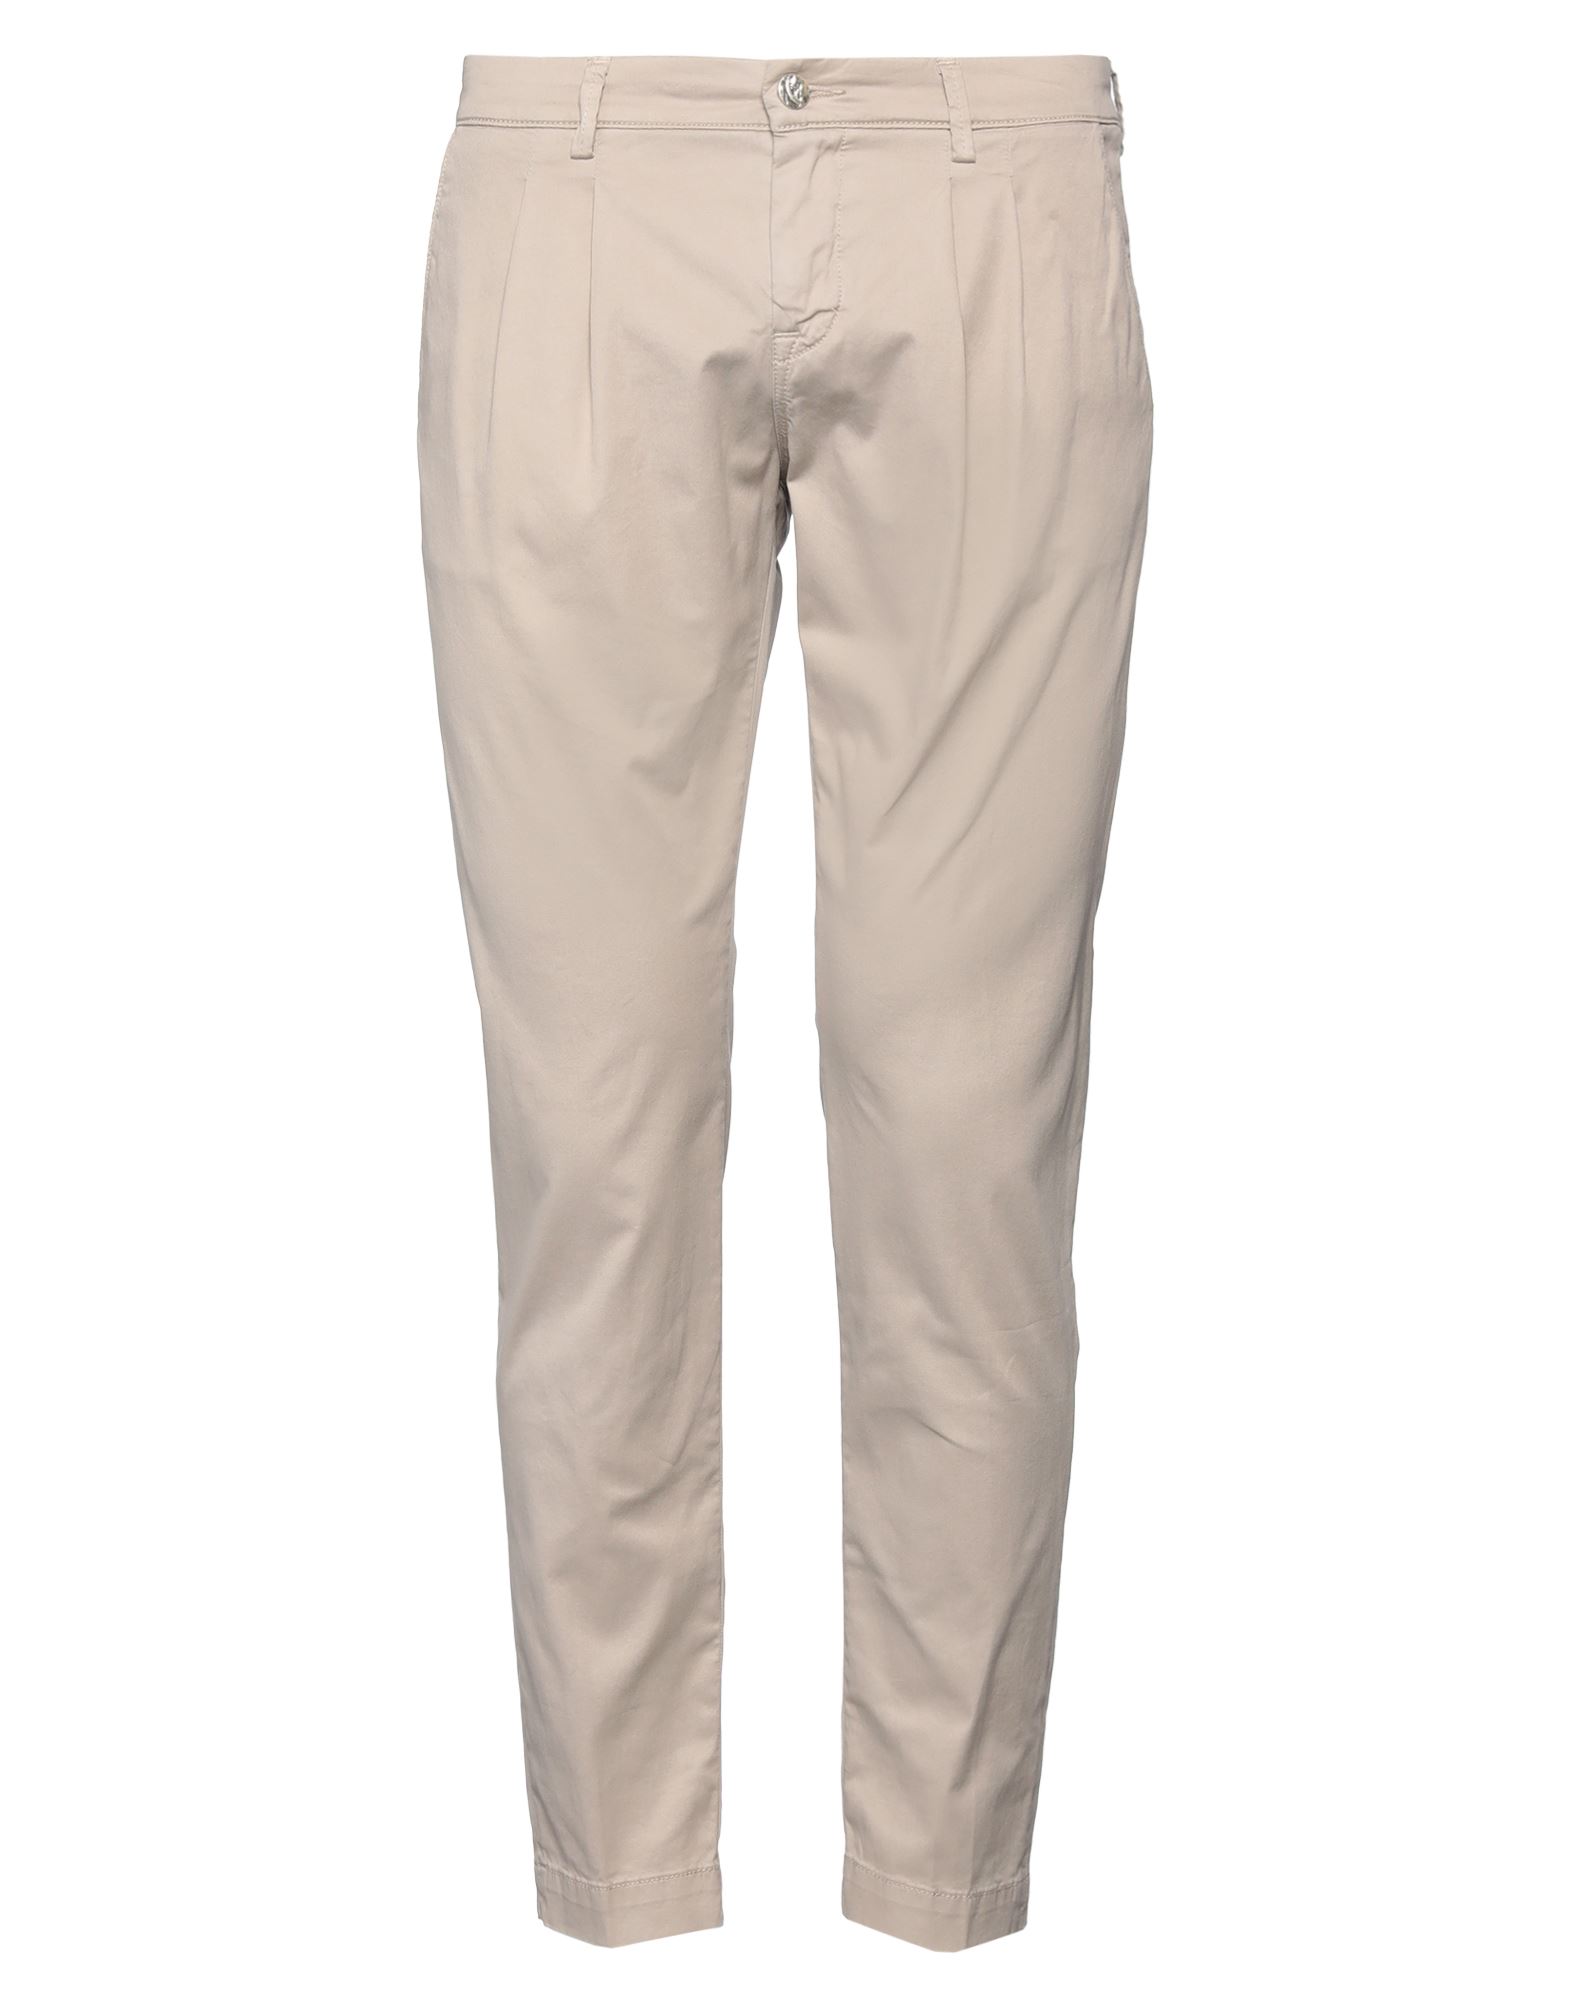 Shop Jacob Cohёn Man Pants Dove Grey Size 31 Cotton, Elastane